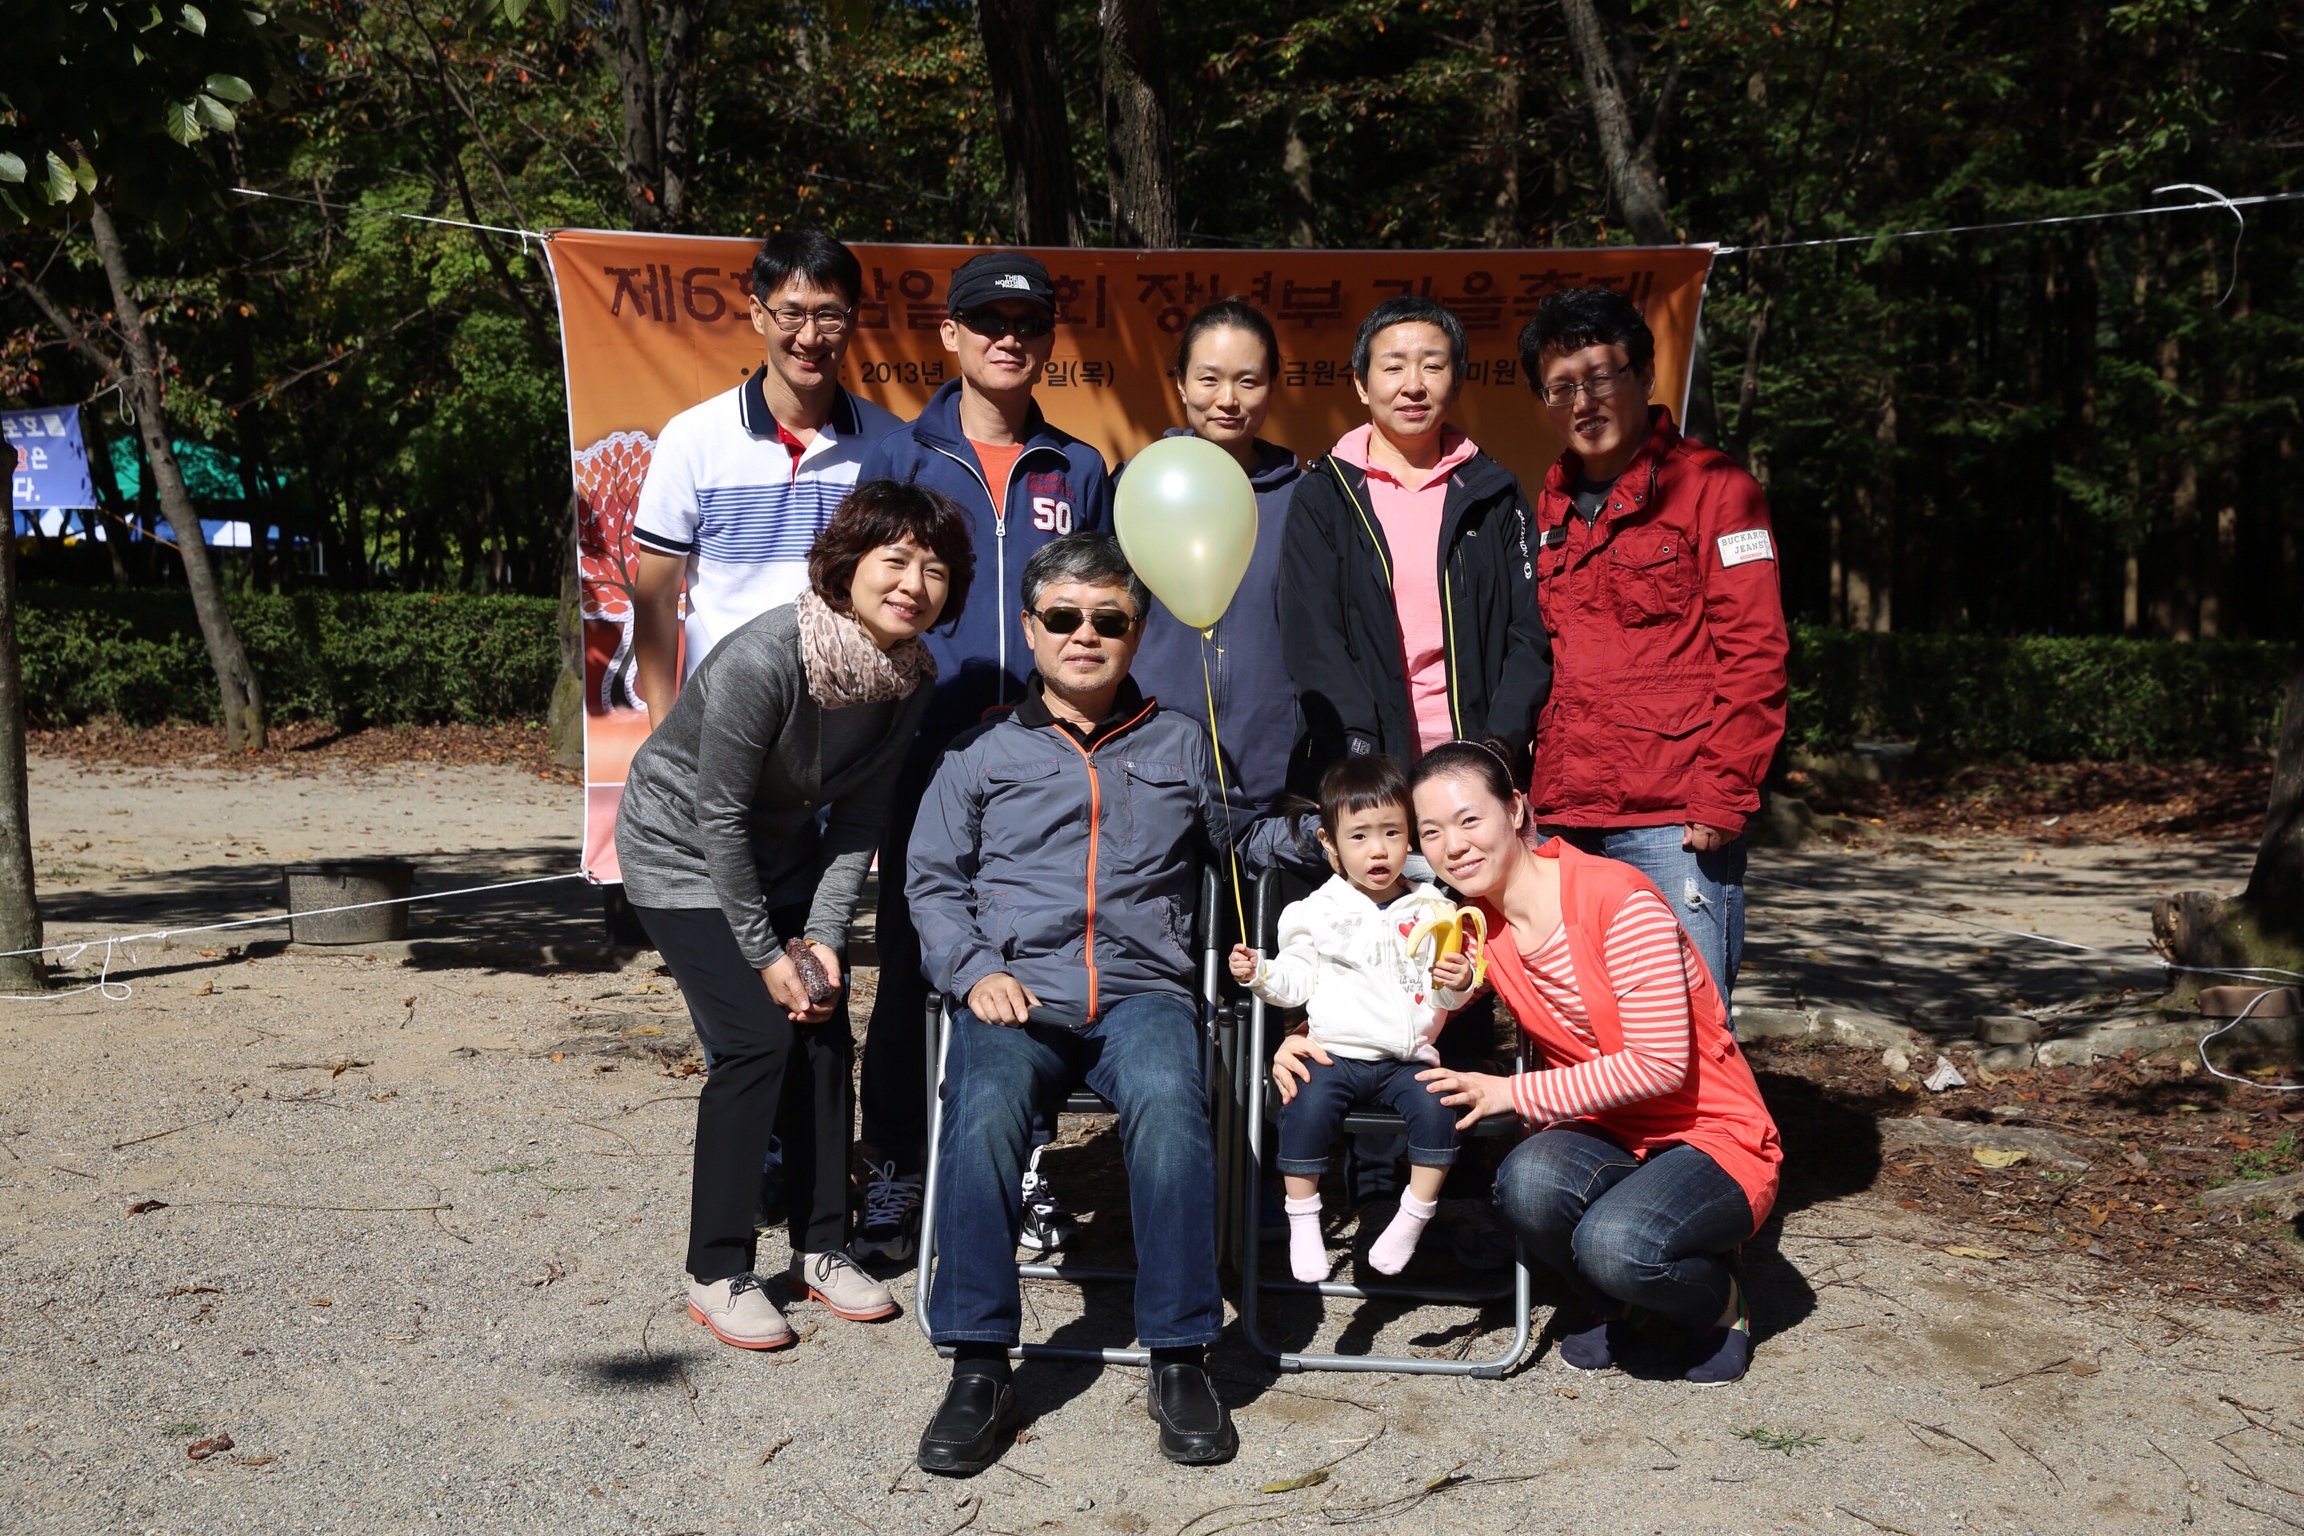 IMG_20131003_102202.jpg : 제 6회 삼일교회 장년 가을축제 - 담임목사님과 함께 가족사진